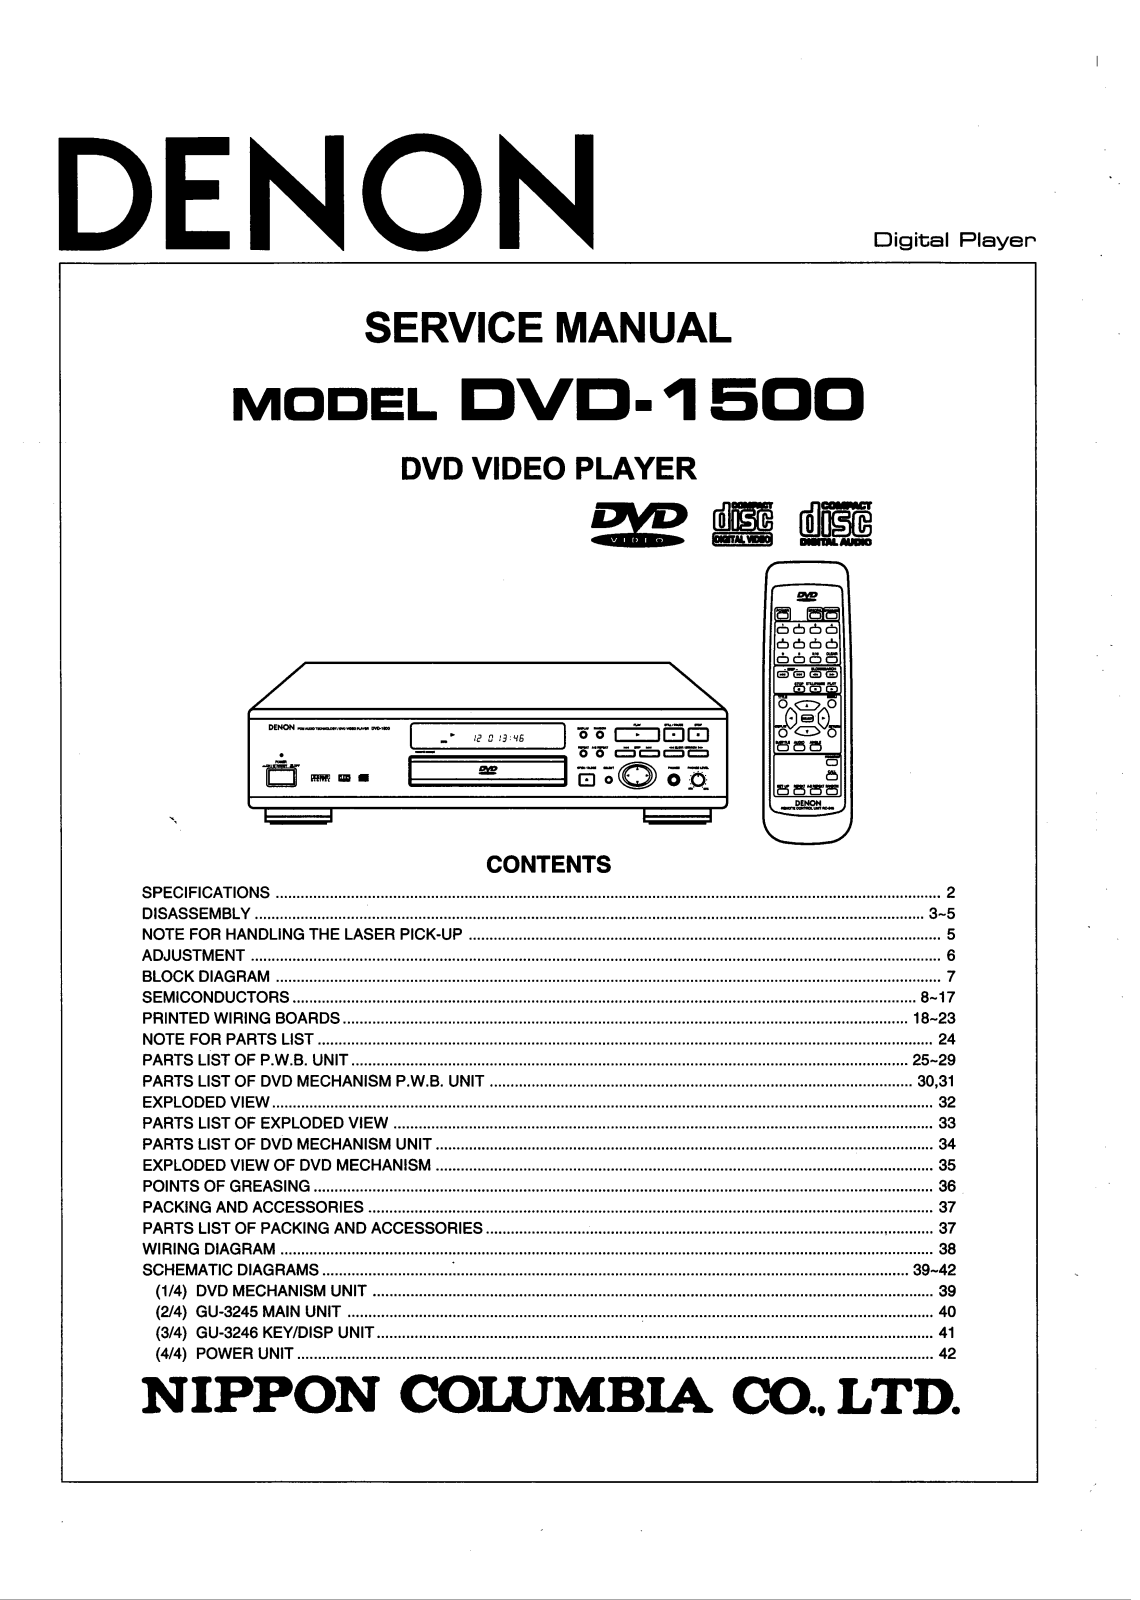 Denon DVD-1500 Service Manual